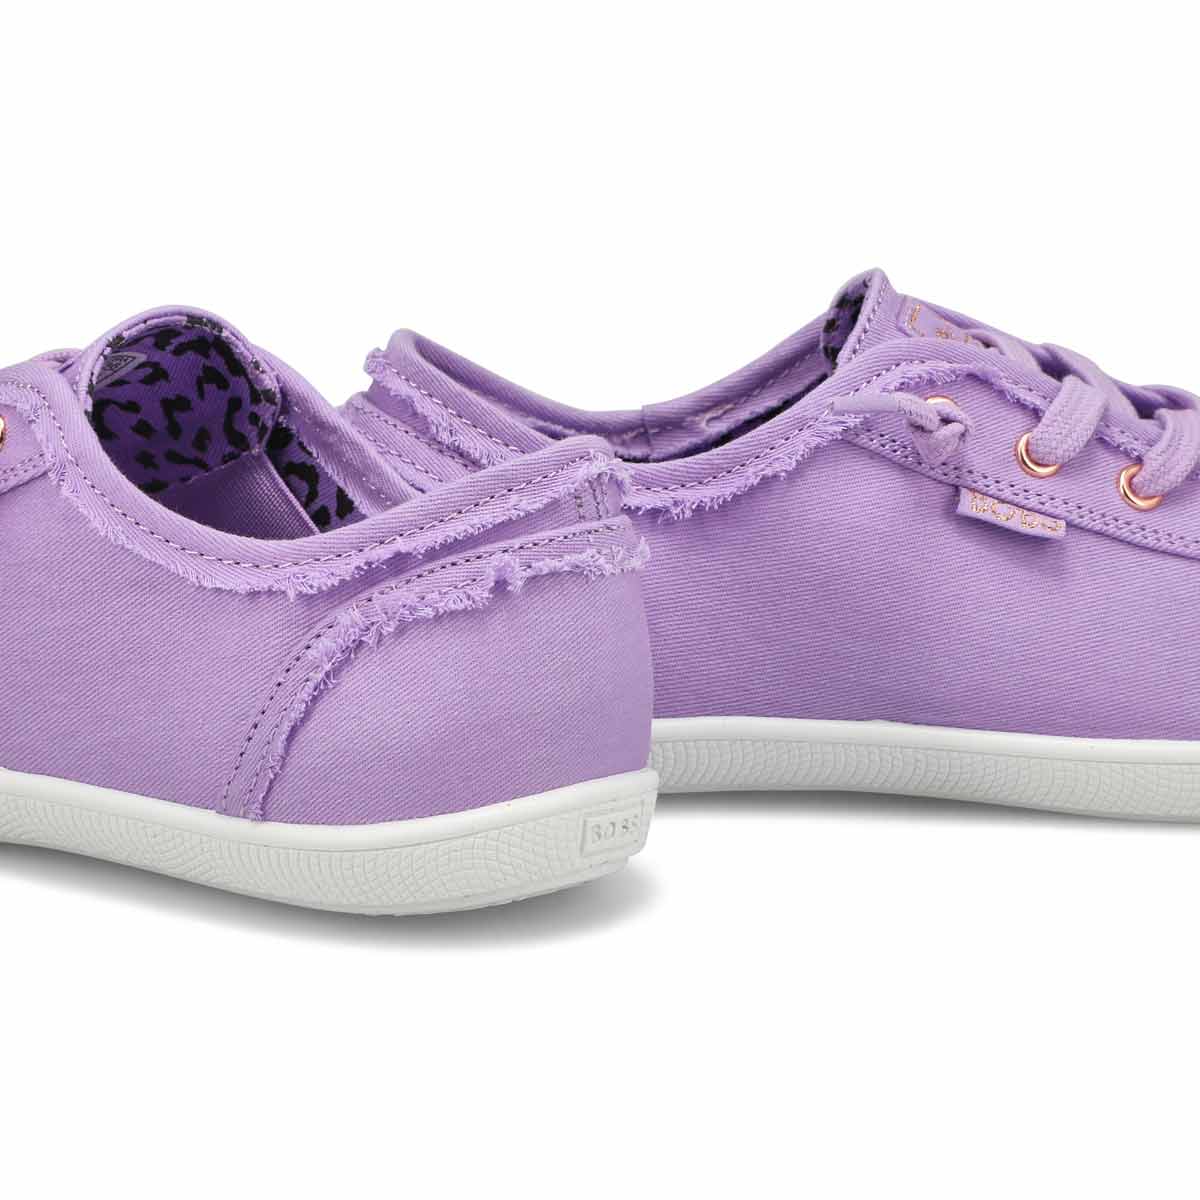 Women's Bobs B Cute Slip On Sneaker - Lilac